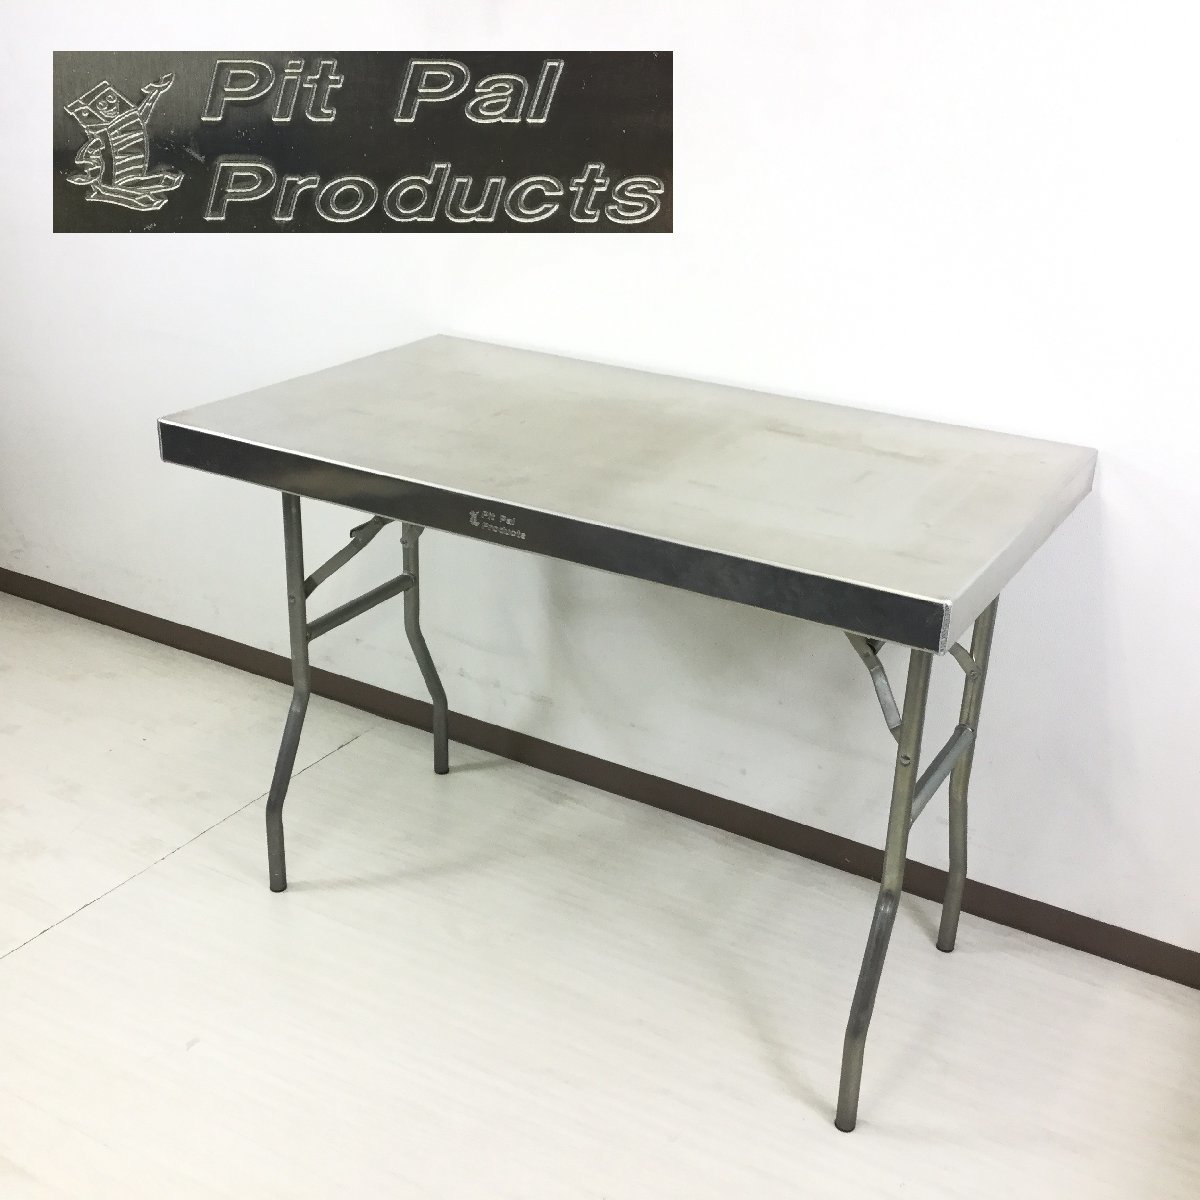 PIT PAL ピットパル ALUMINIUM WORK TABLE Sサイズ ワークテーブル 折り畳み式  パシフィックファニチャーサービス/PFS取扱 アメリカ